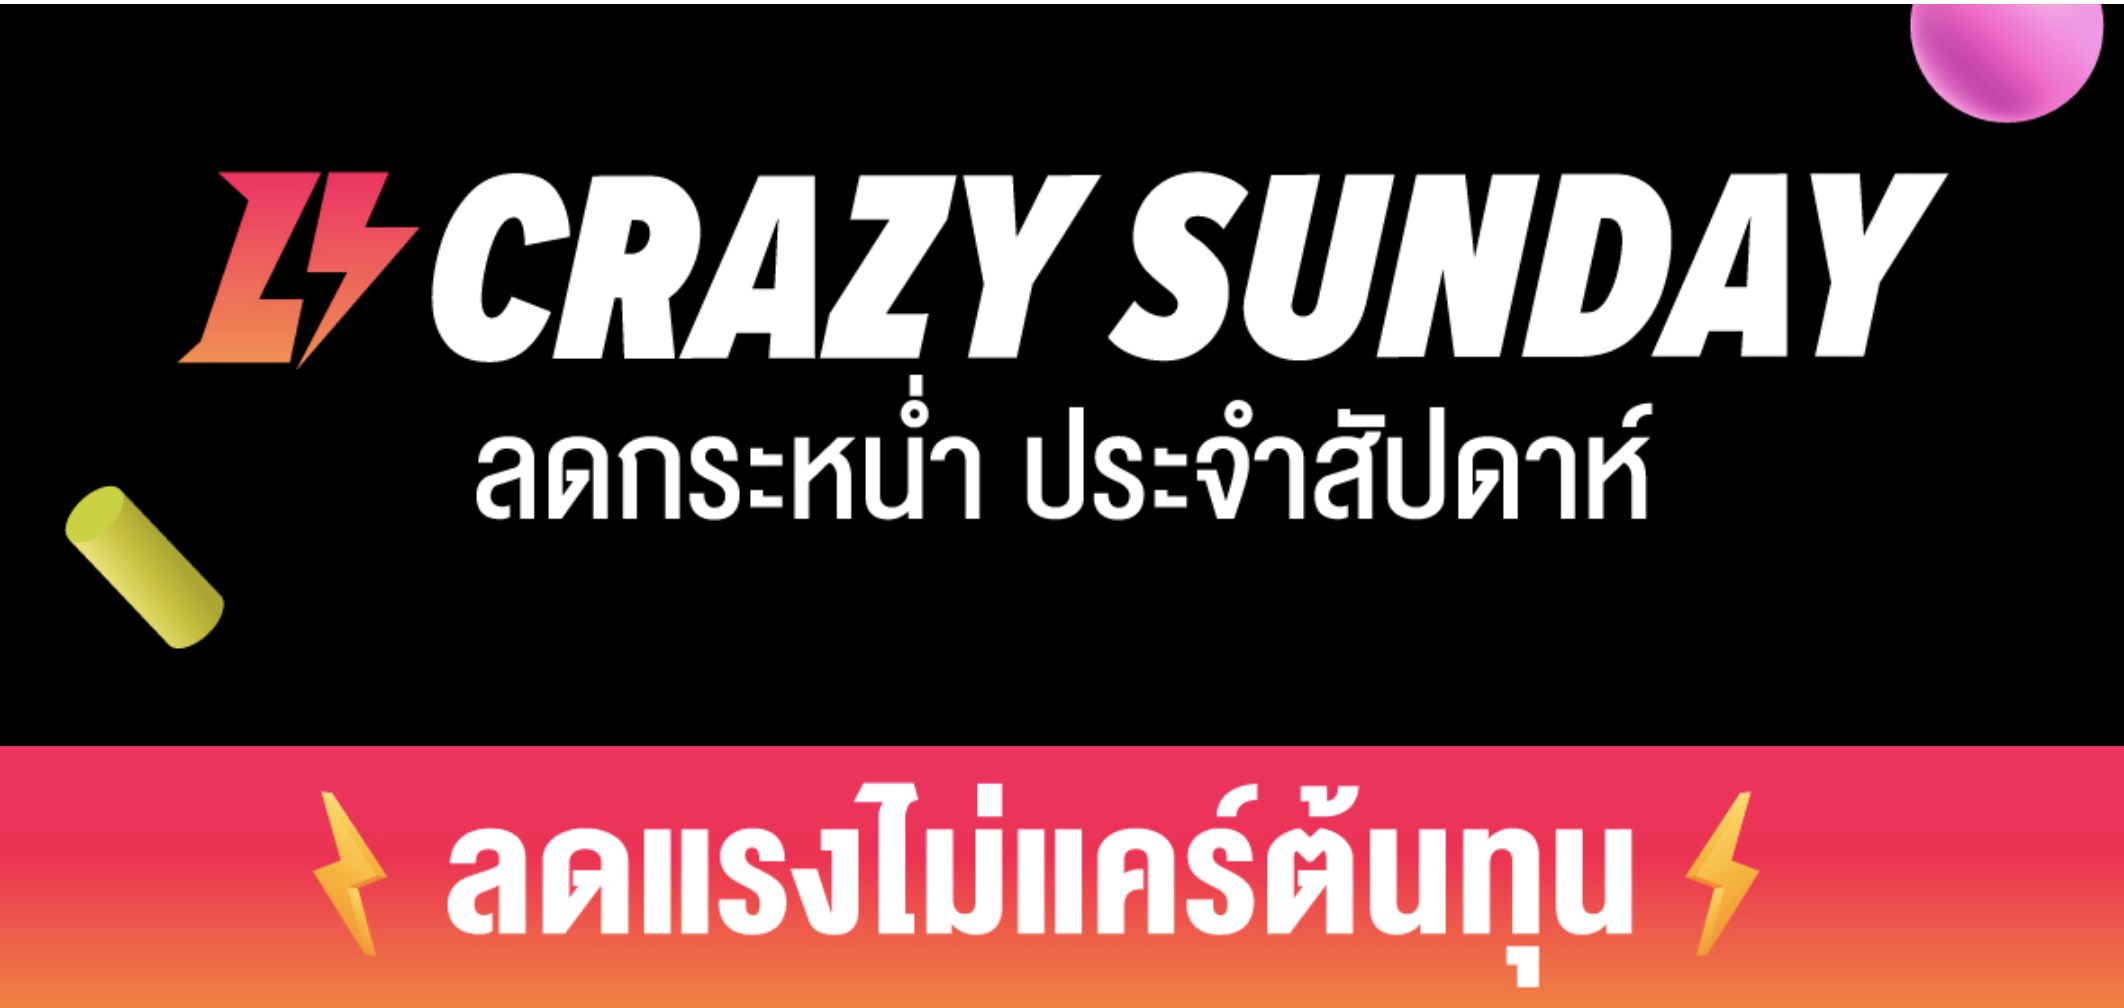 lazada-crazy-sunday